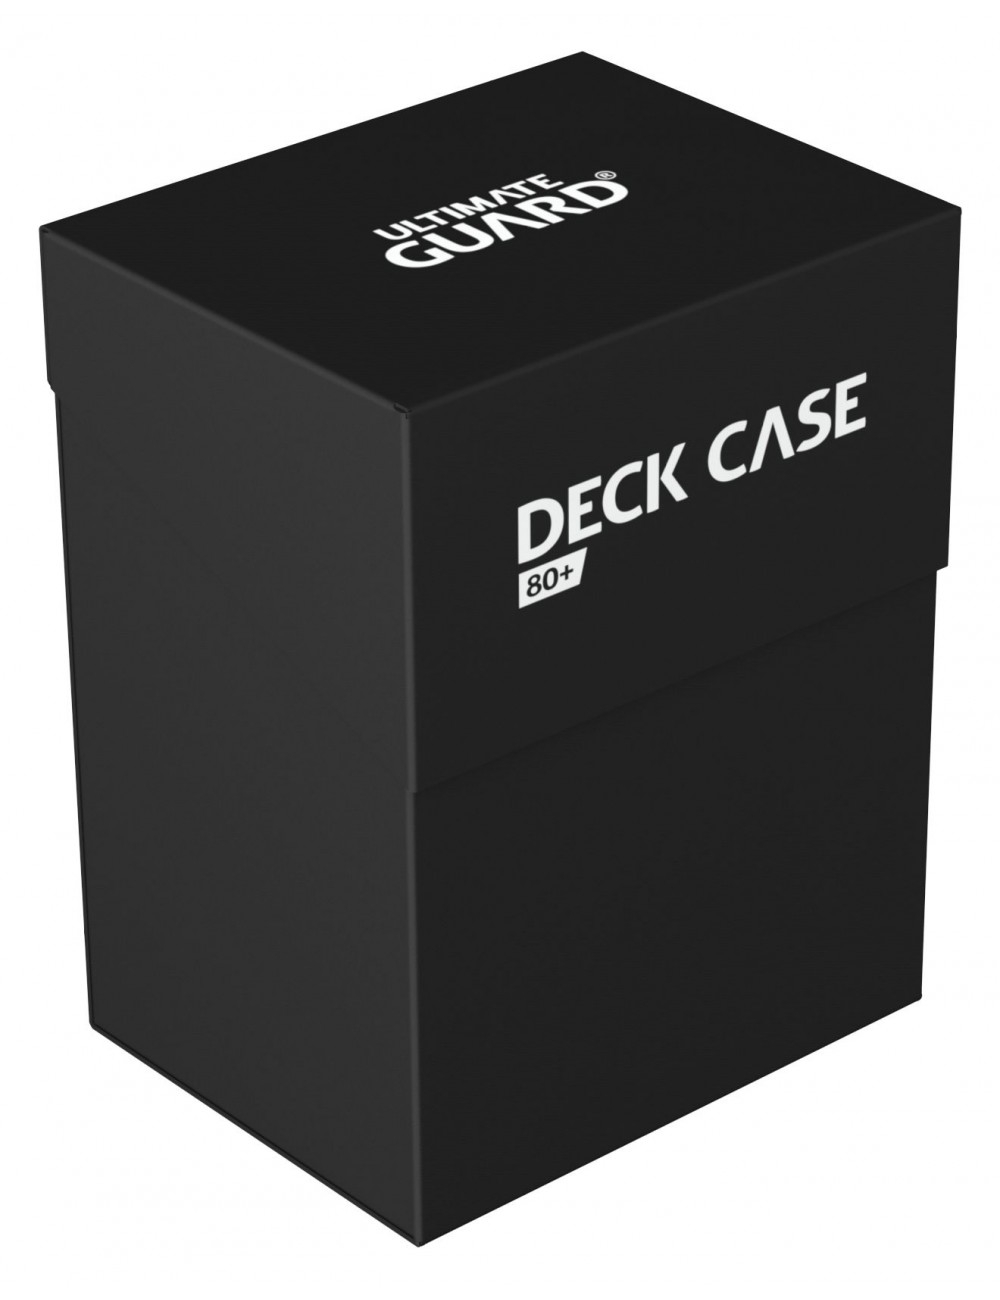 Deck Case 80+ Negro ugd10255  Ultimate Guard